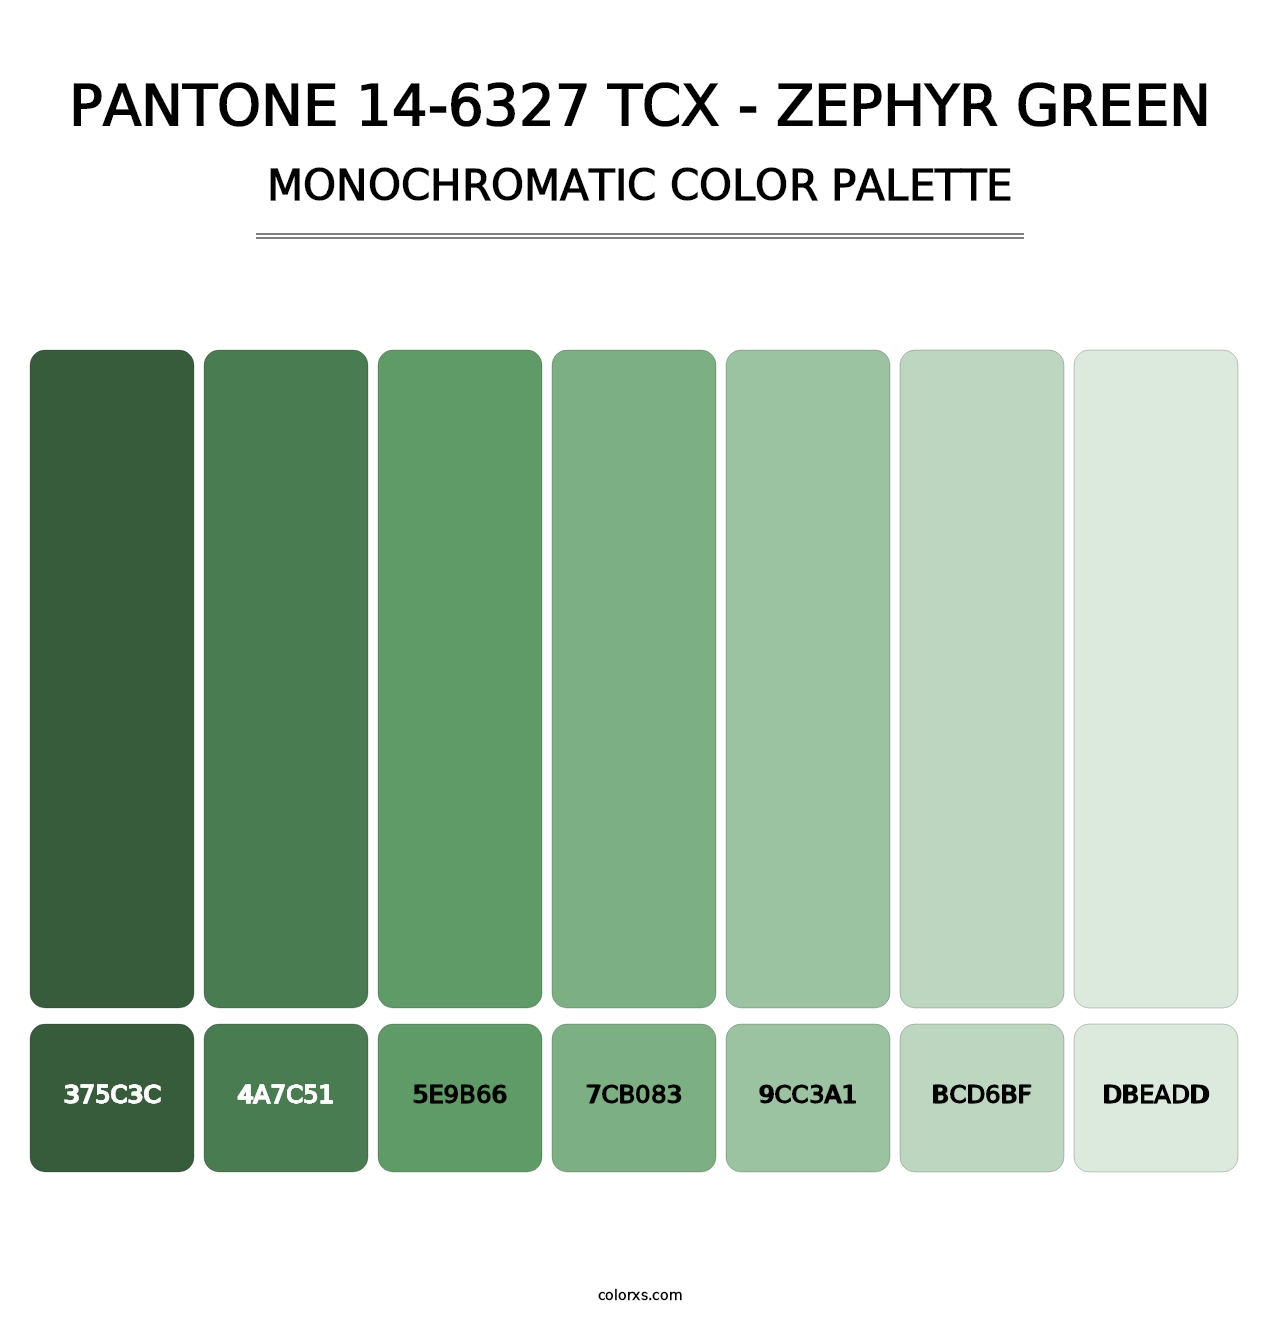 PANTONE 14-6327 TCX - Zephyr Green - Monochromatic Color Palette